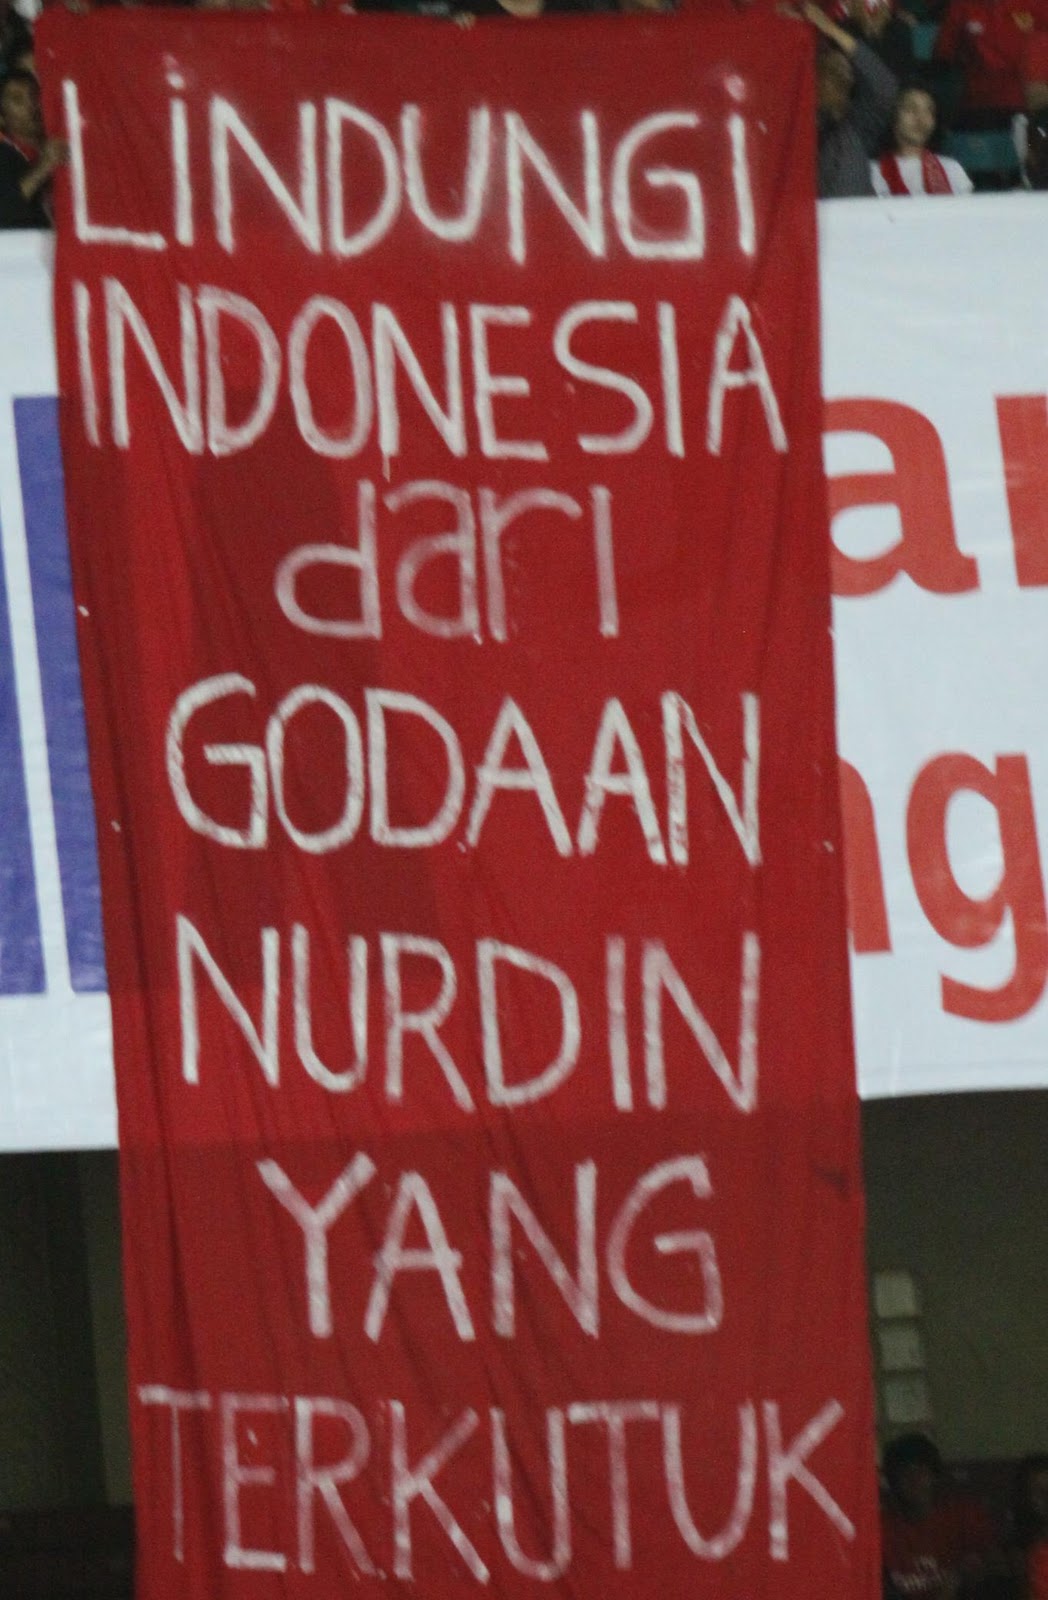 INDONESIA SUPER LIGA